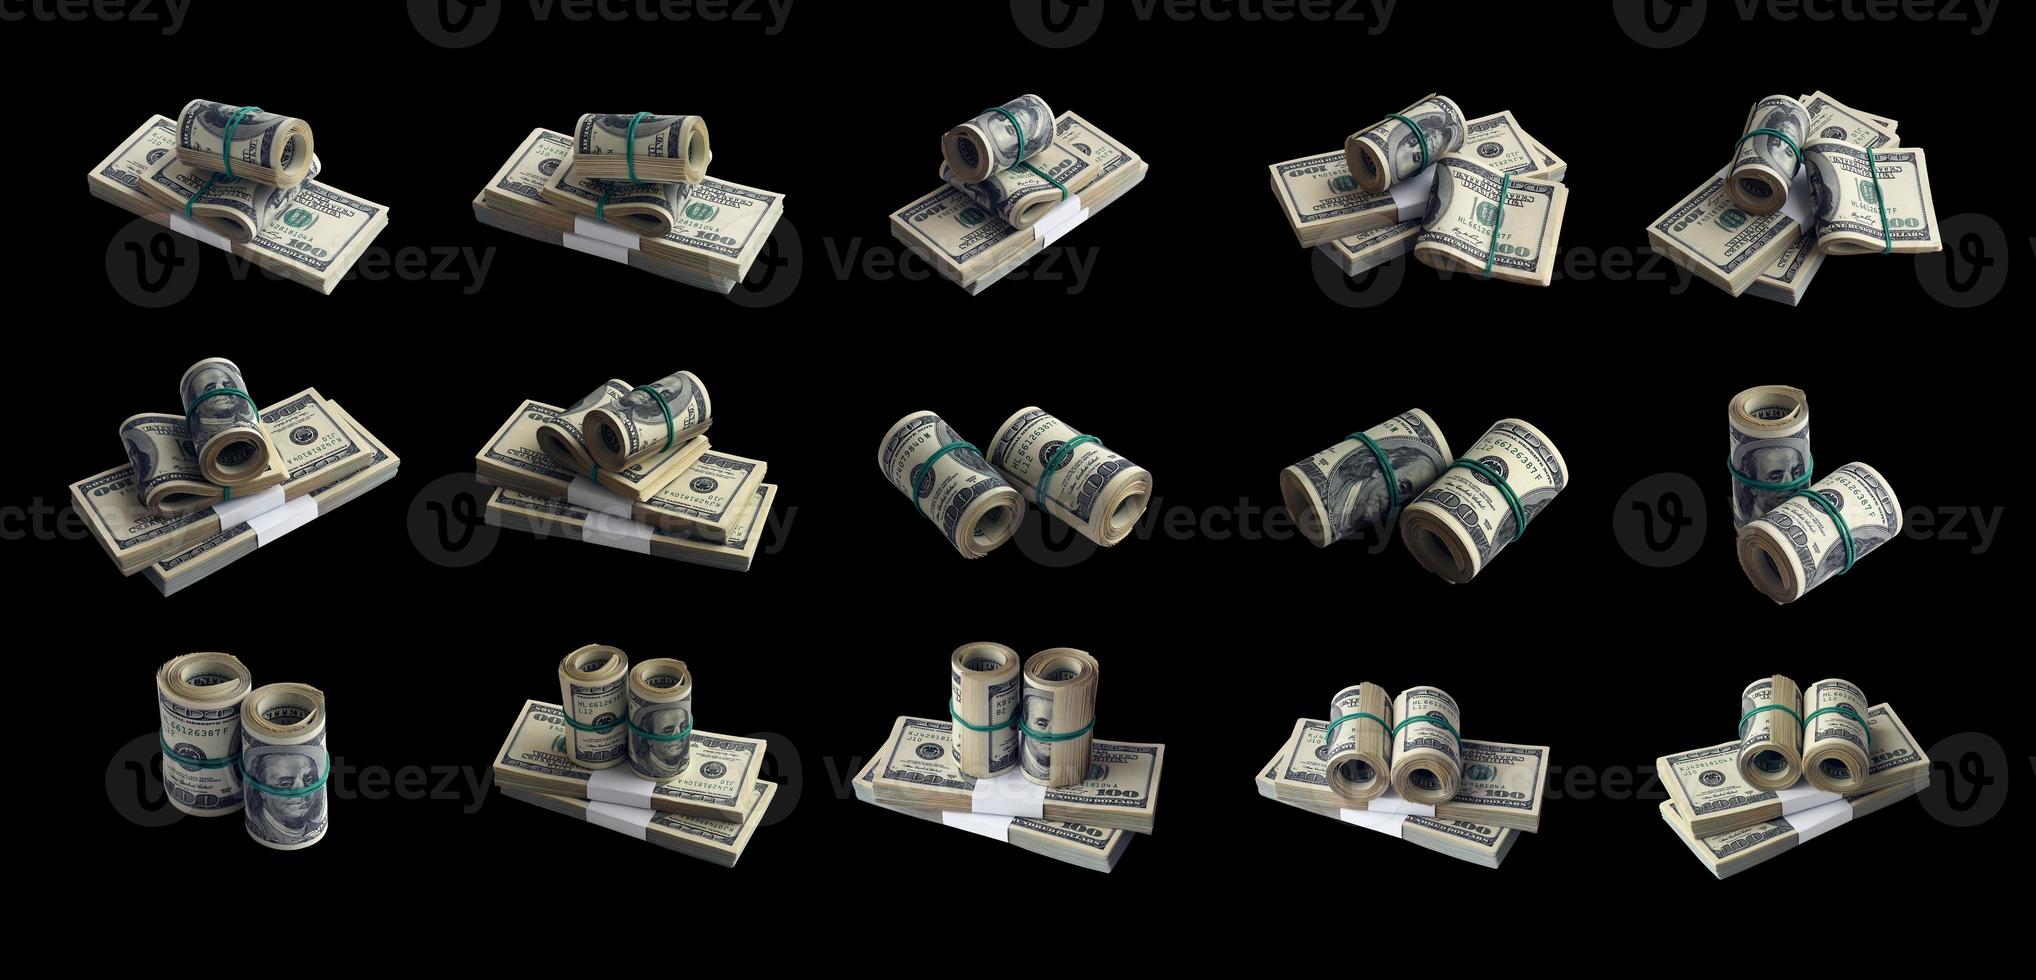 grand ensemble de liasses de billets d'un dollar américain isolés sur blanc. collage avec de nombreux packs d'argent américain avec une haute résolution sur fond blanc parfait photo